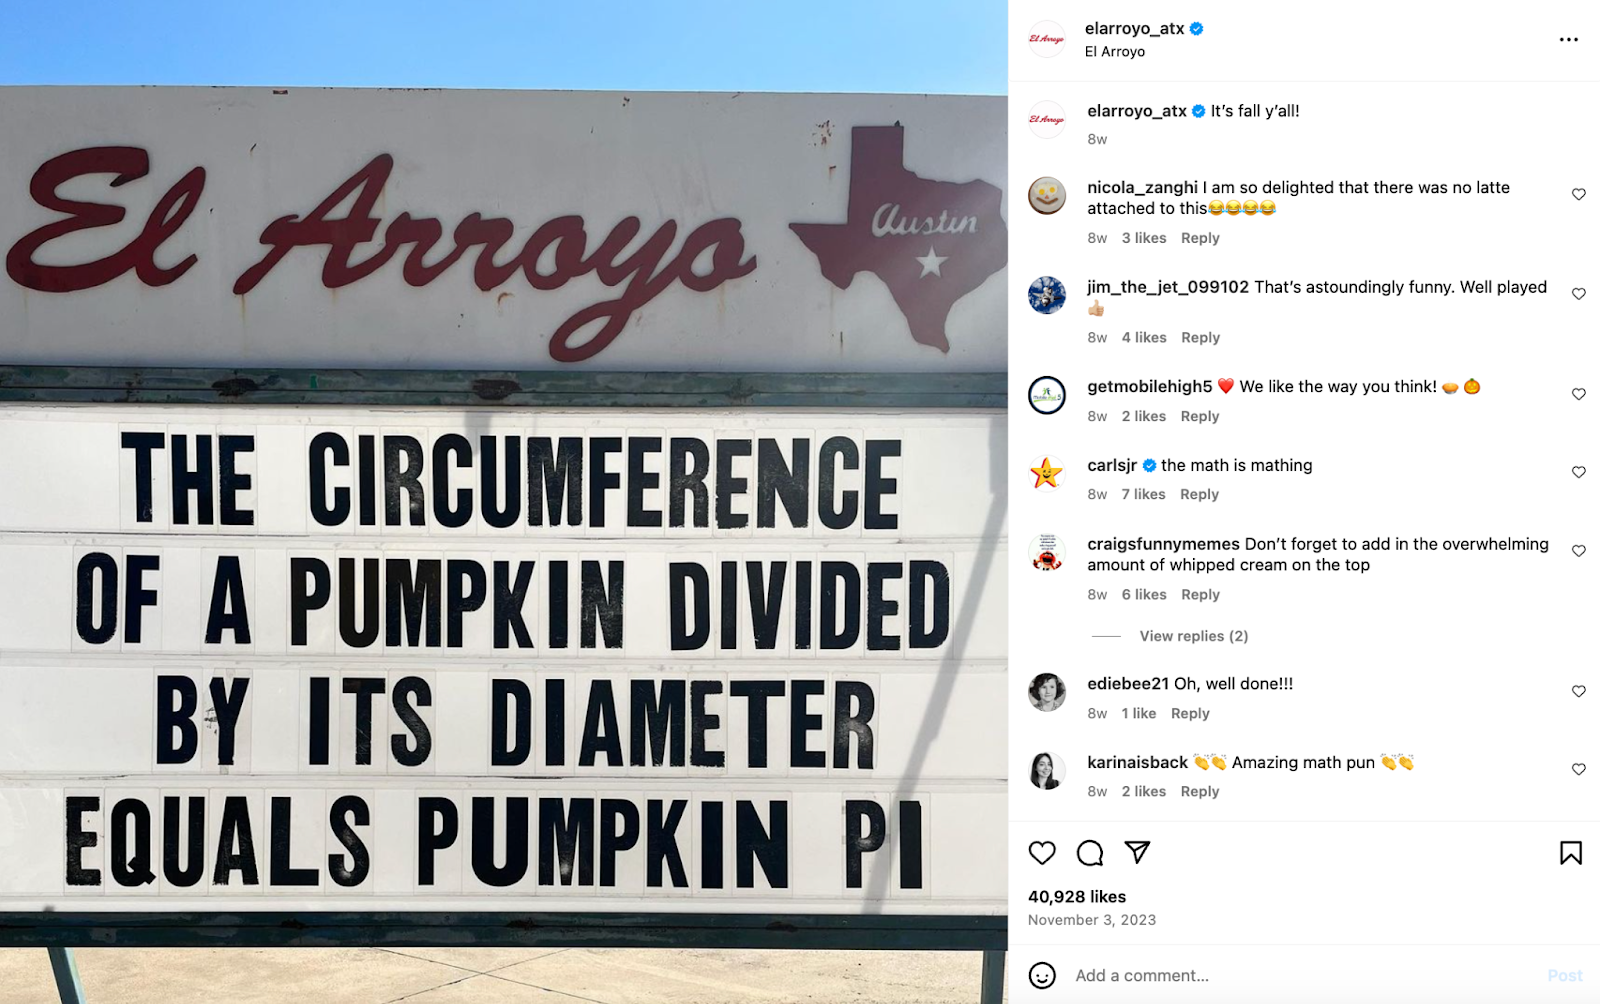 Креативные идеи ресторанного маркетинга: ресторан El Arroyo в Остине известен своей вывеской, на которой изображены дерзкие высказывания и шутки.